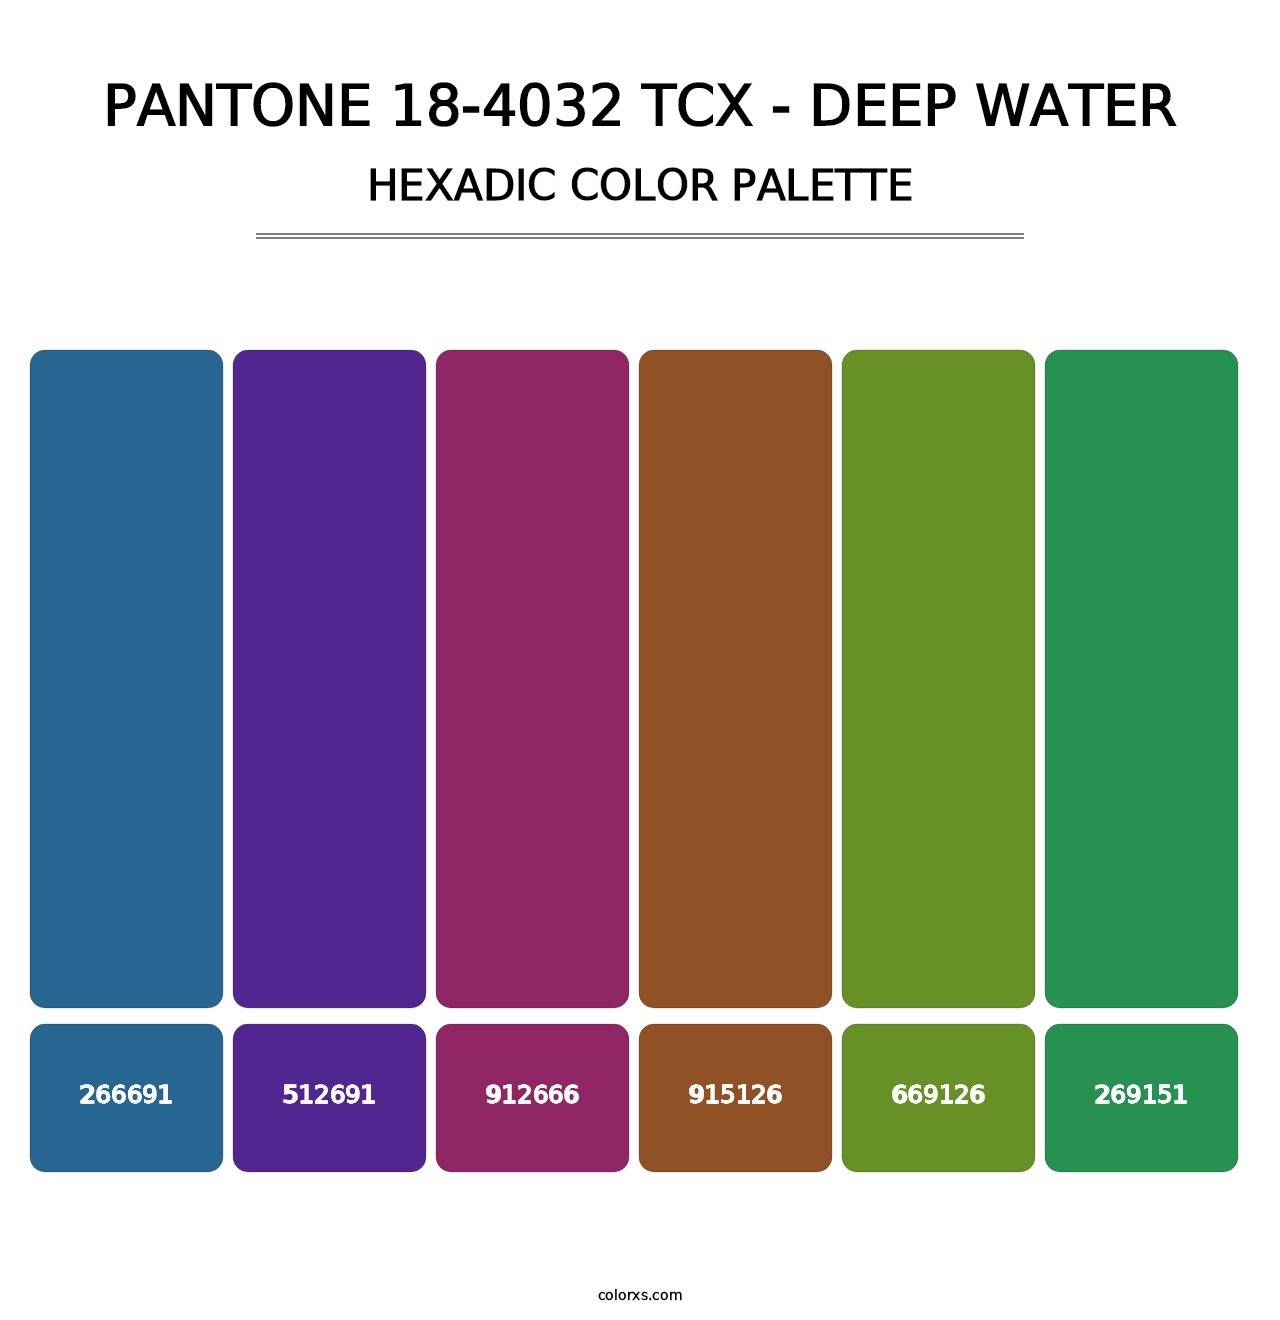 PANTONE 18-4032 TCX - Deep Water - Hexadic Color Palette